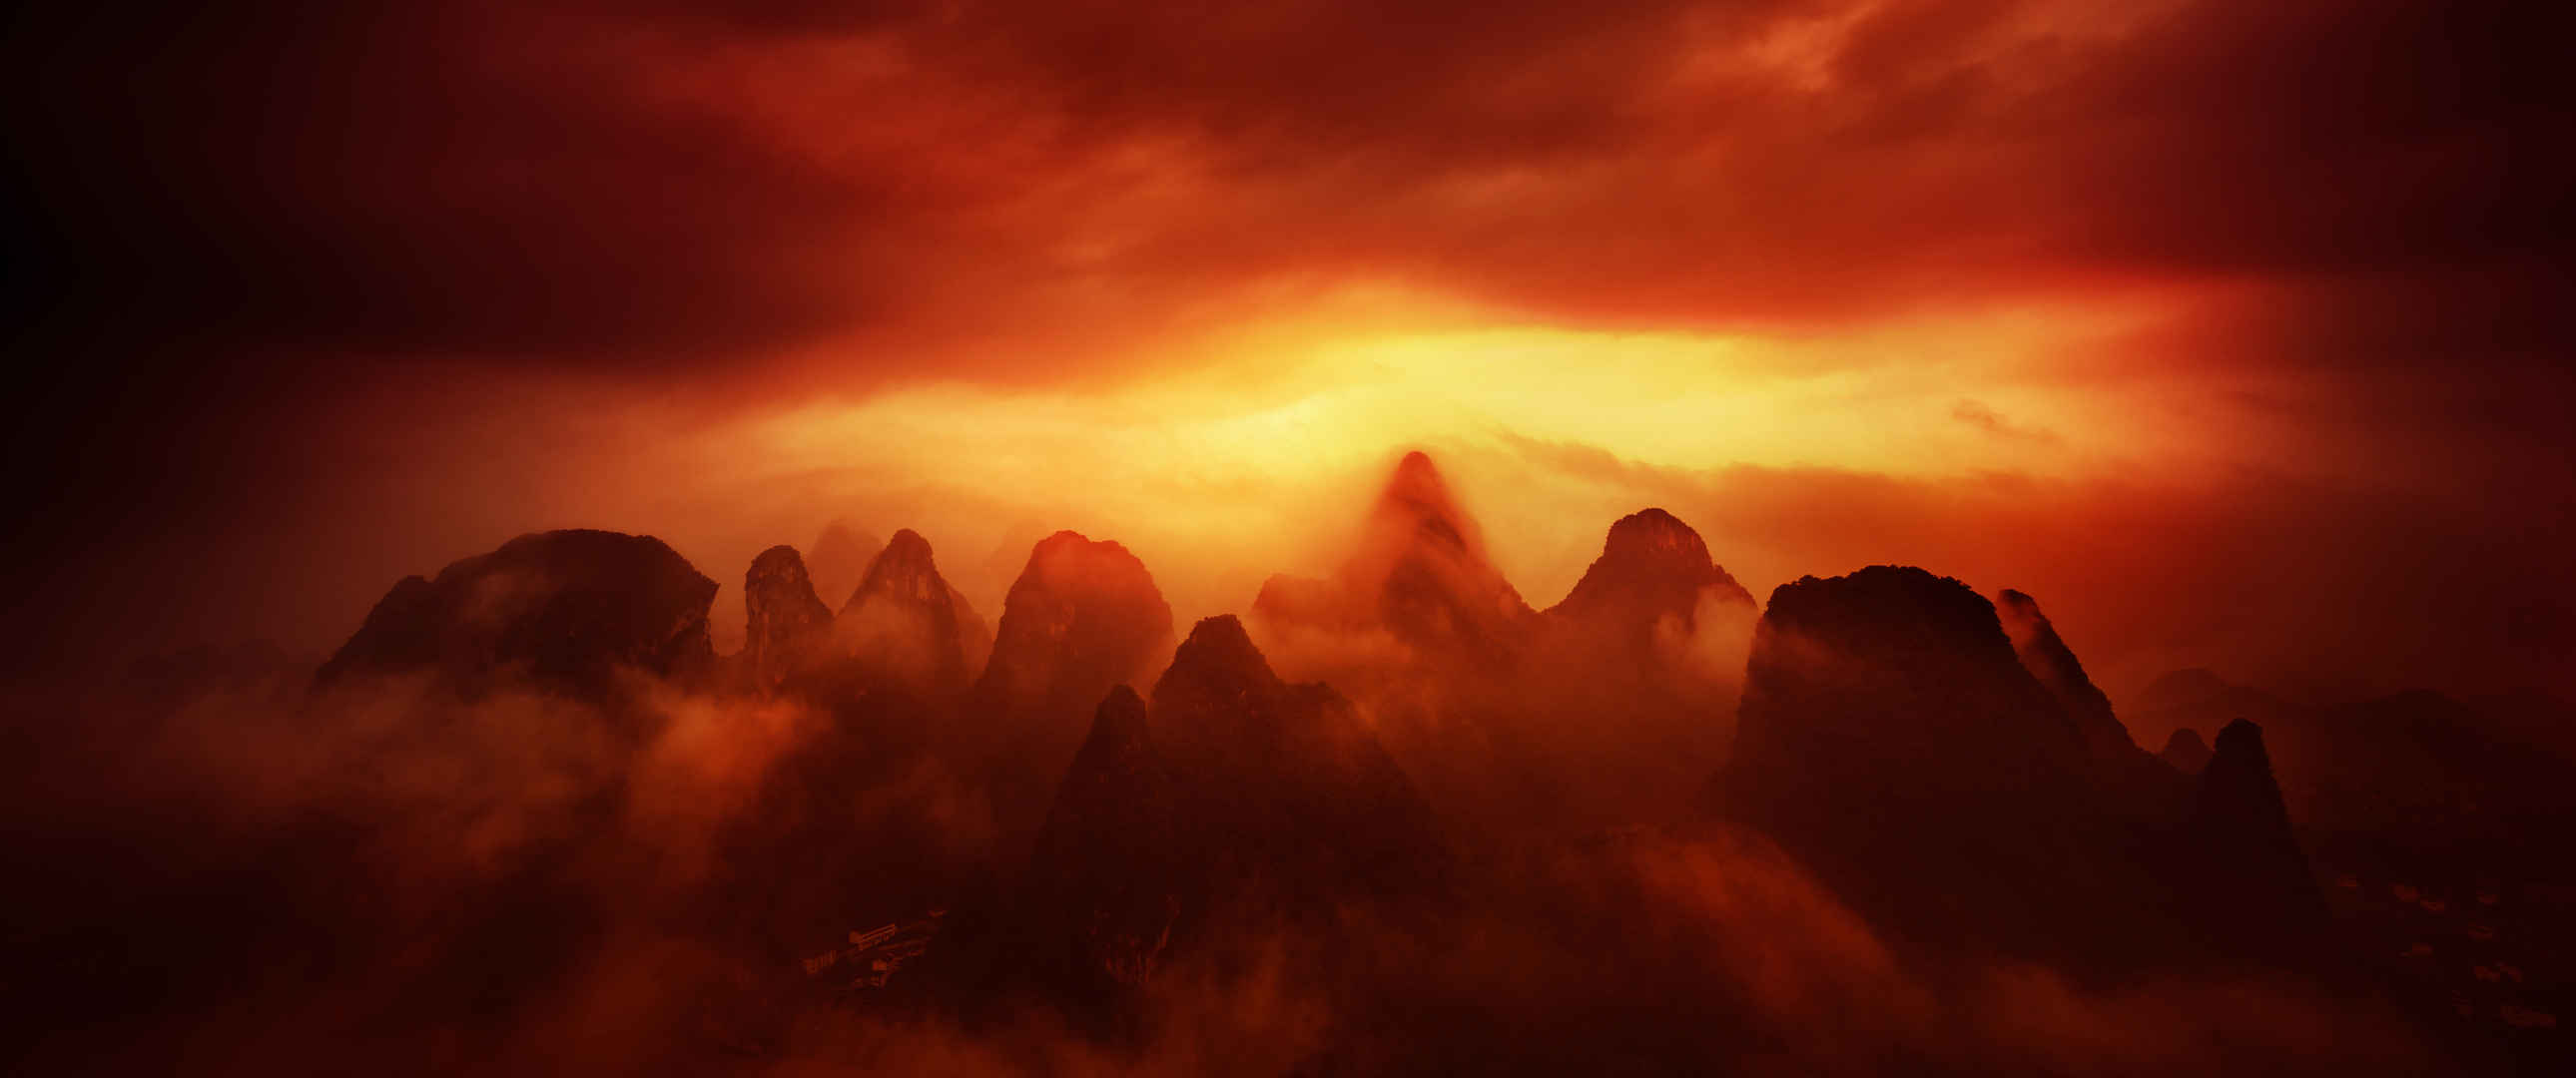 广西桂林山水摄影风景3440x1440图片-